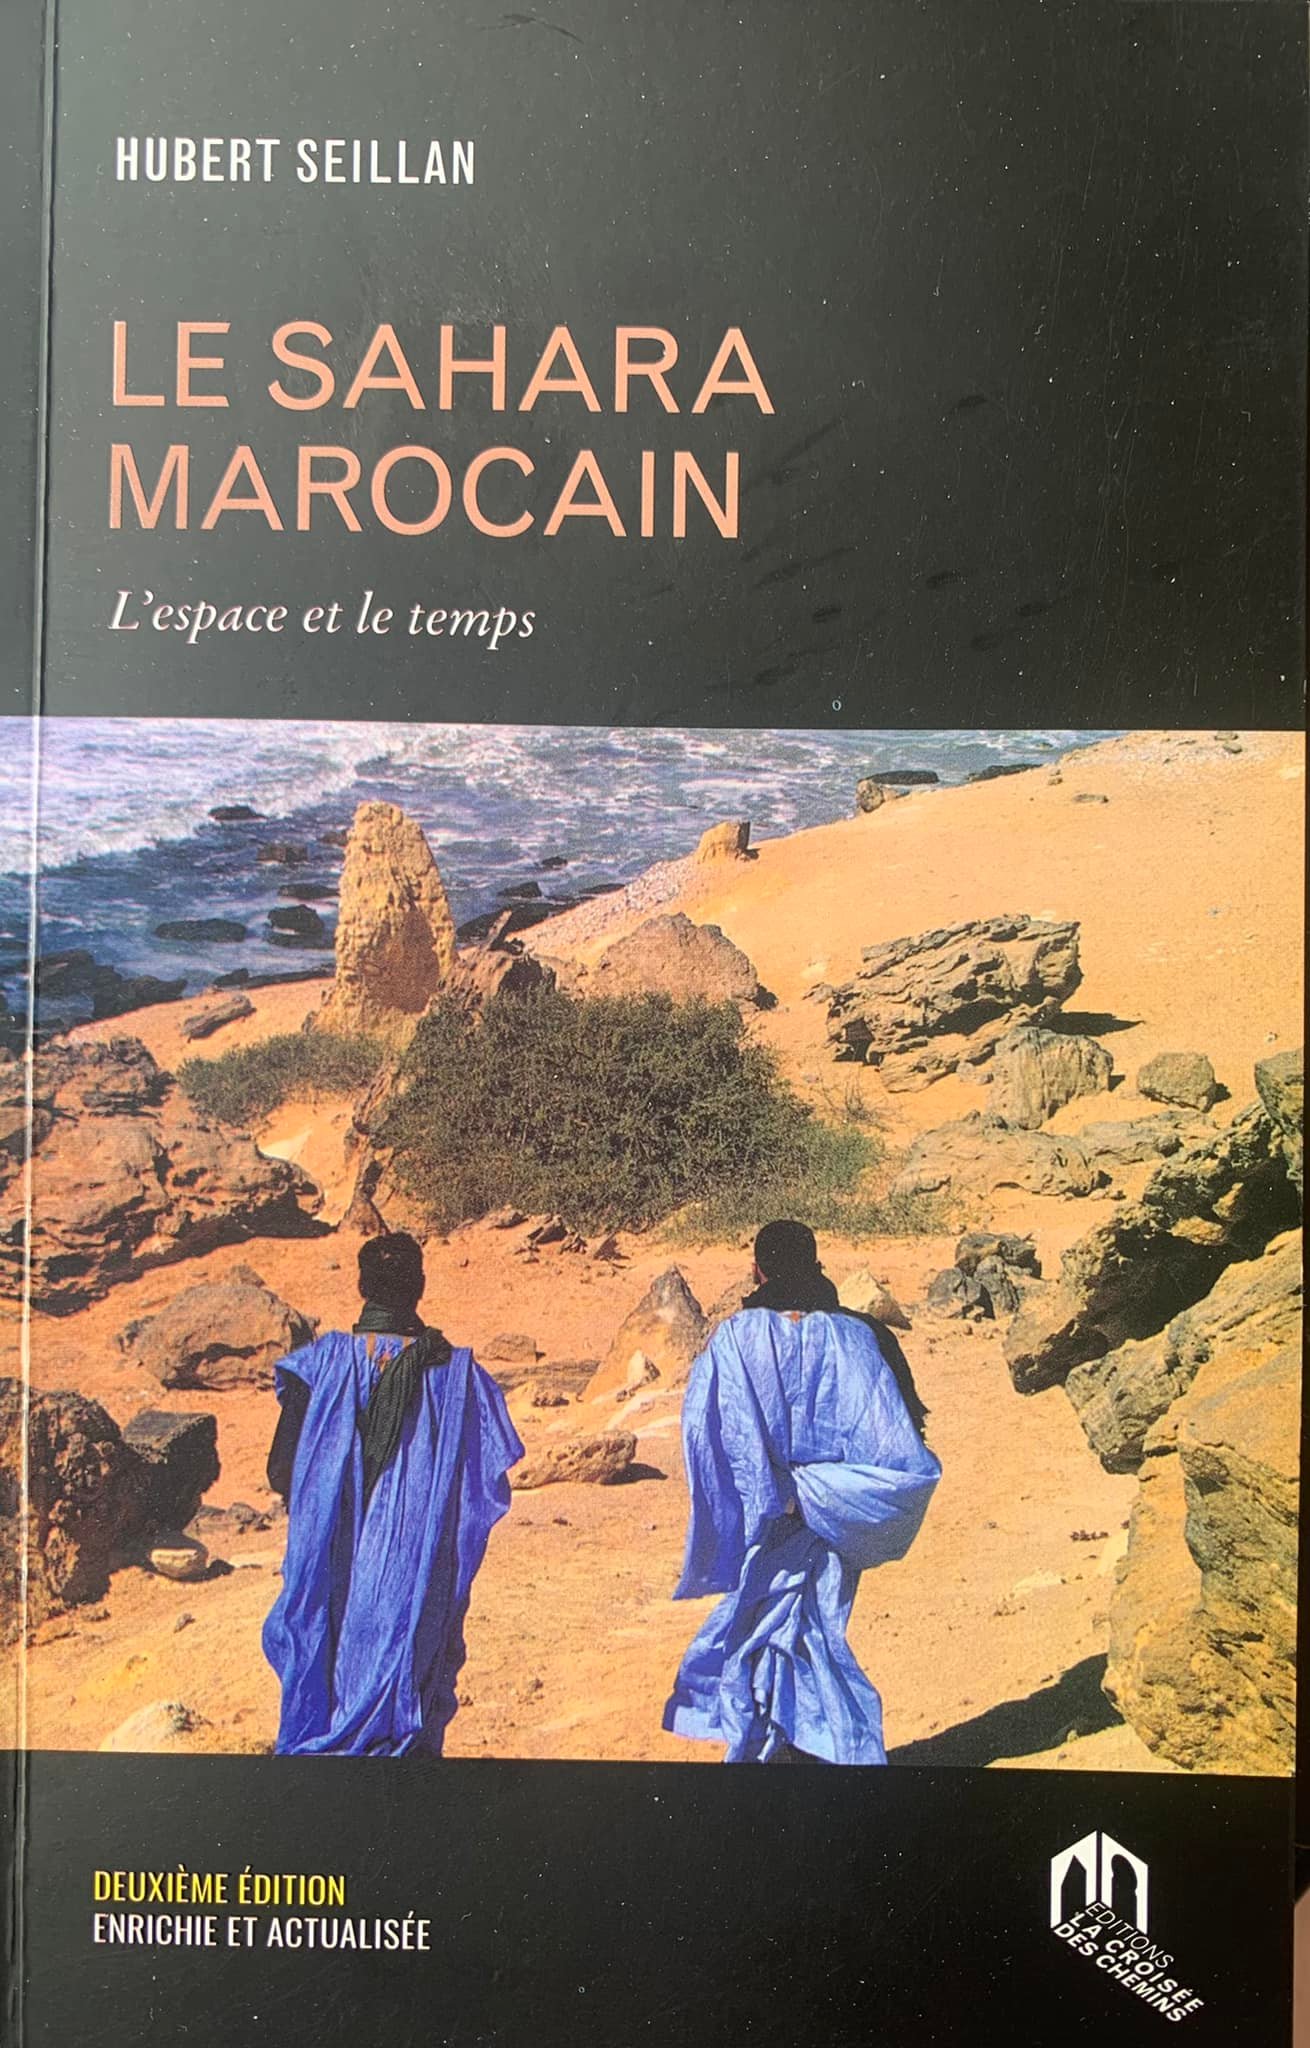 “Le Sahara Marocain” de Hubert Seillan